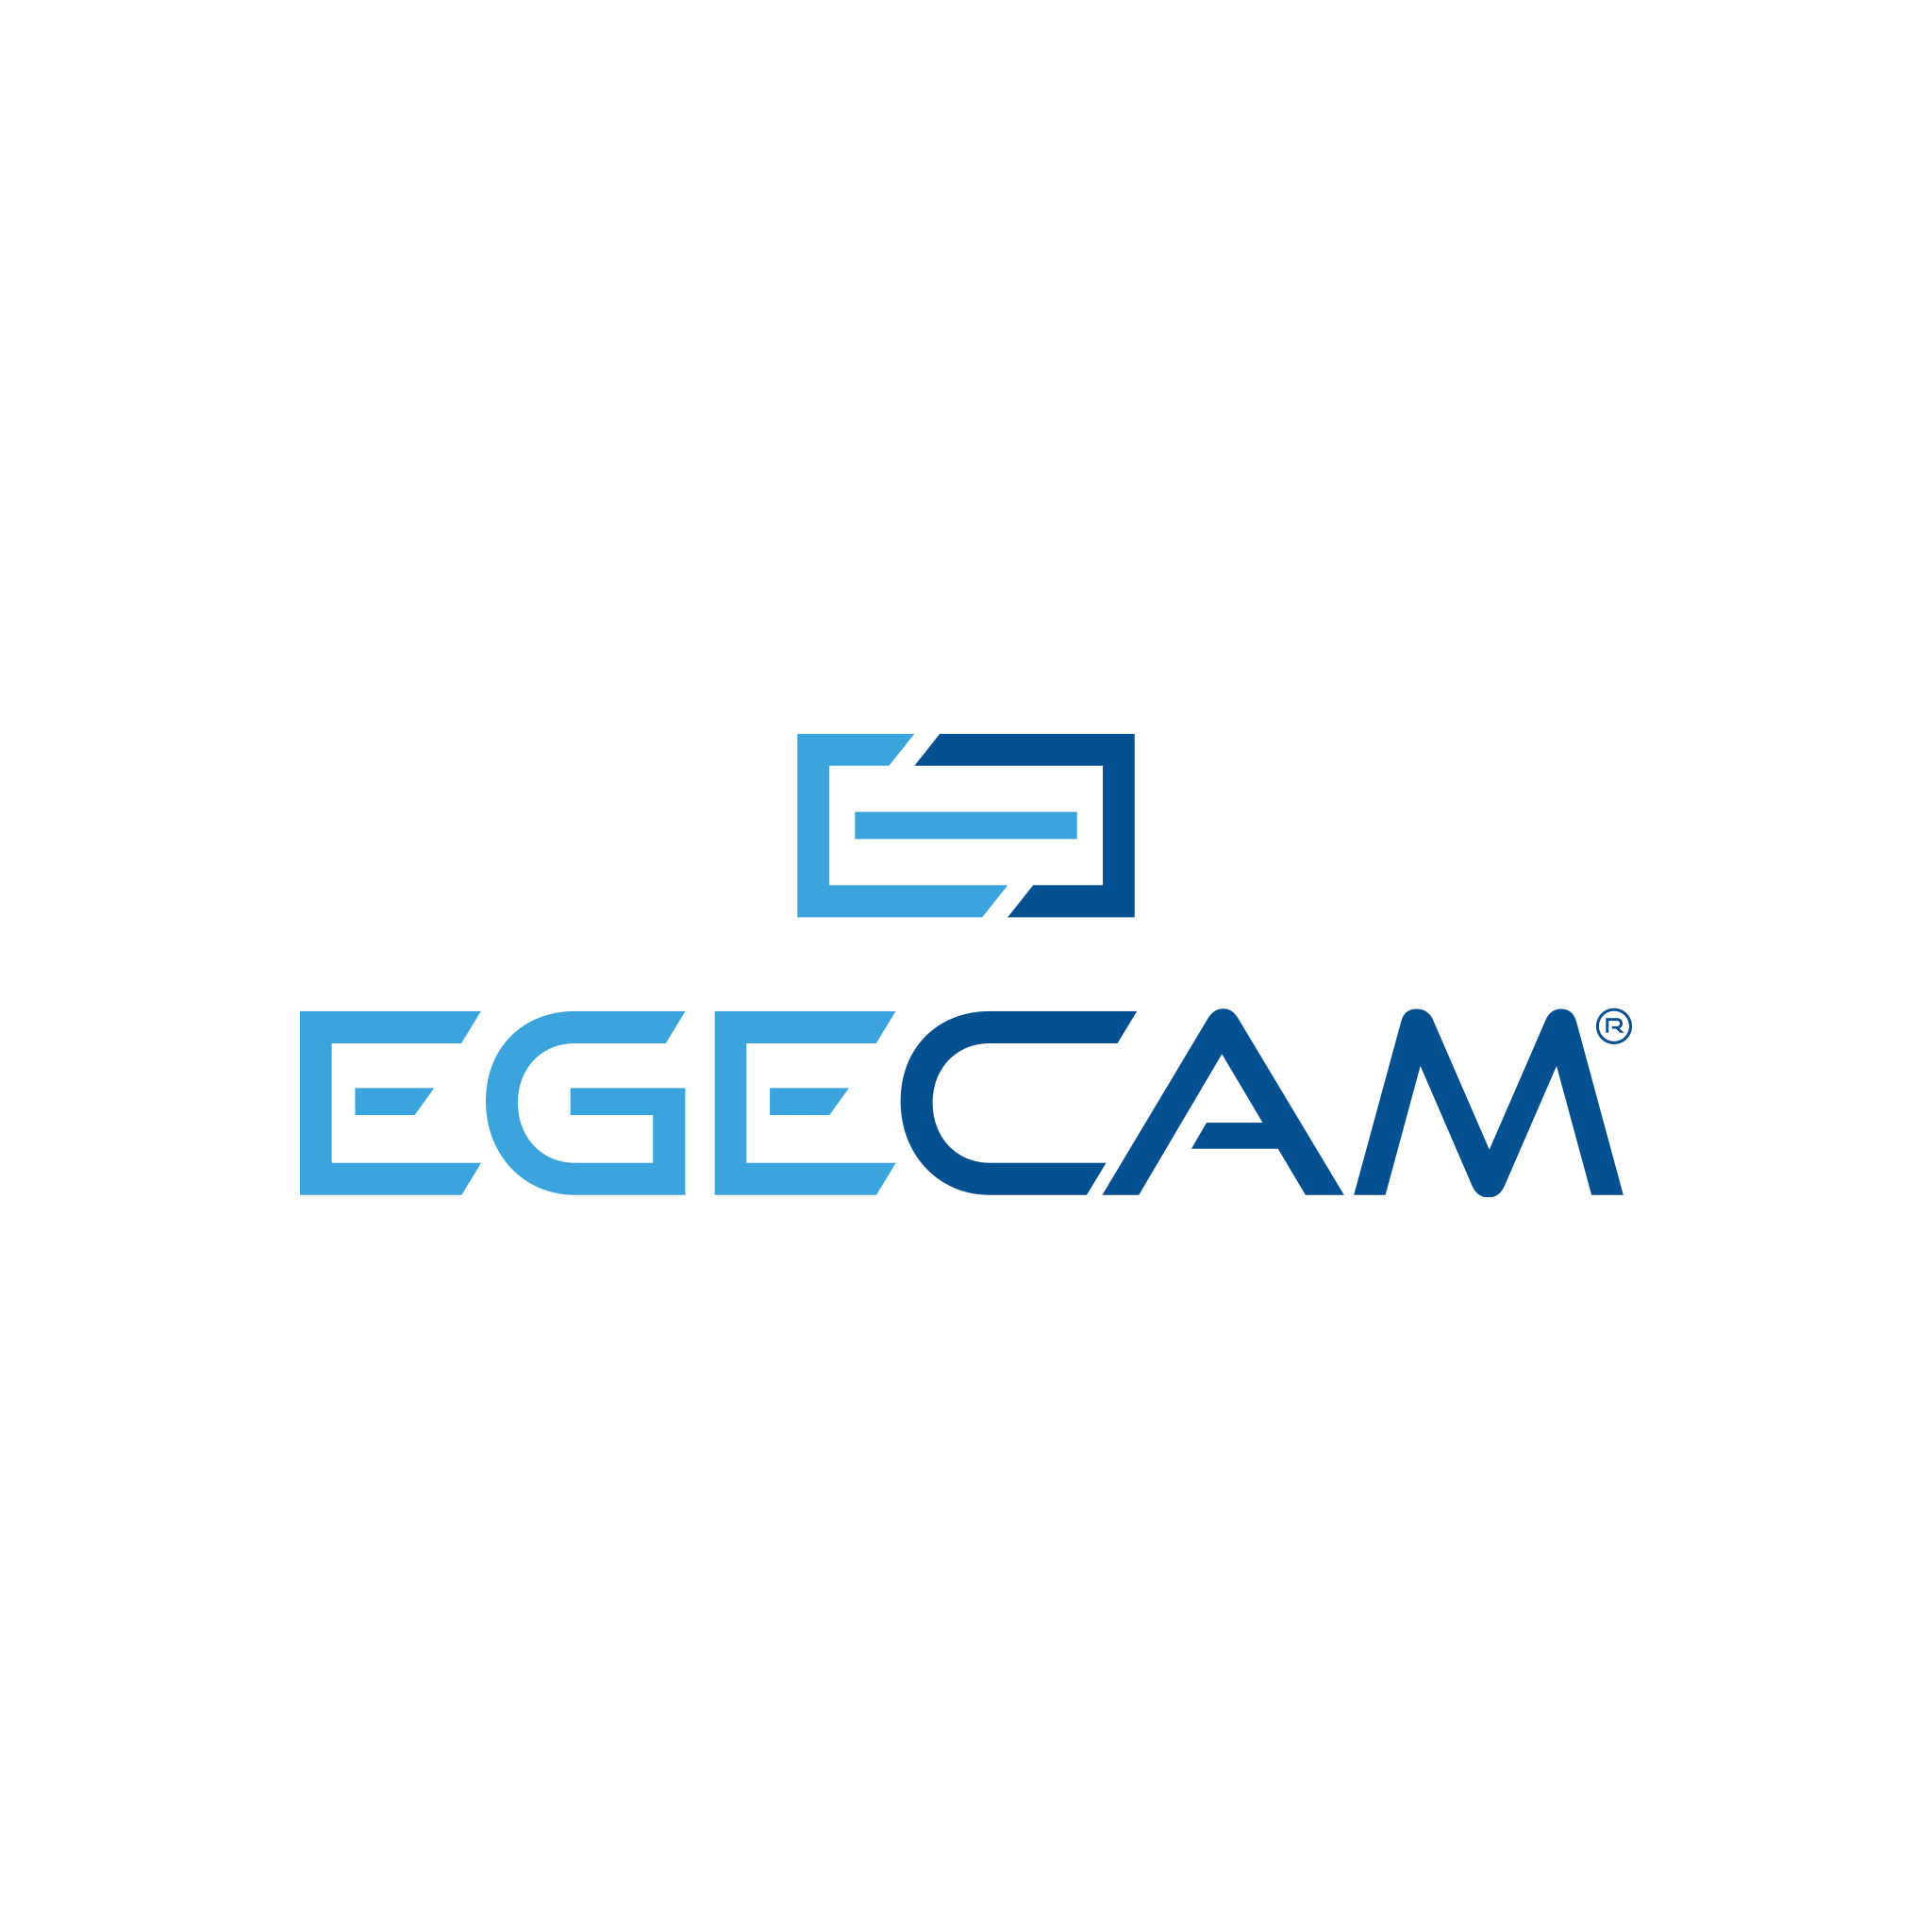 EGE Cam Logo